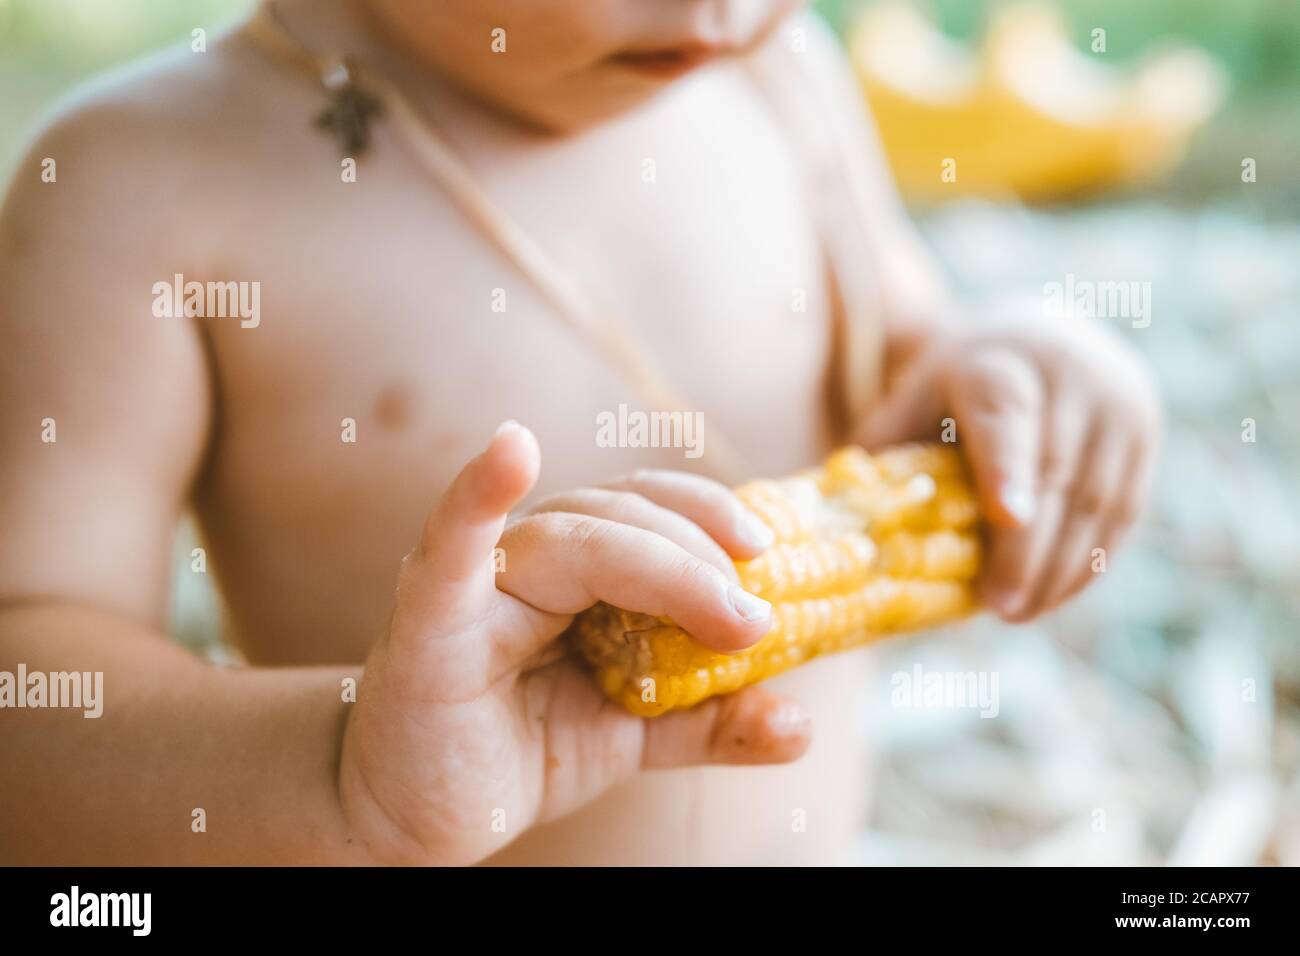 Les mains du petit garçon mangeant du maïs en gros plan Banque D'Images